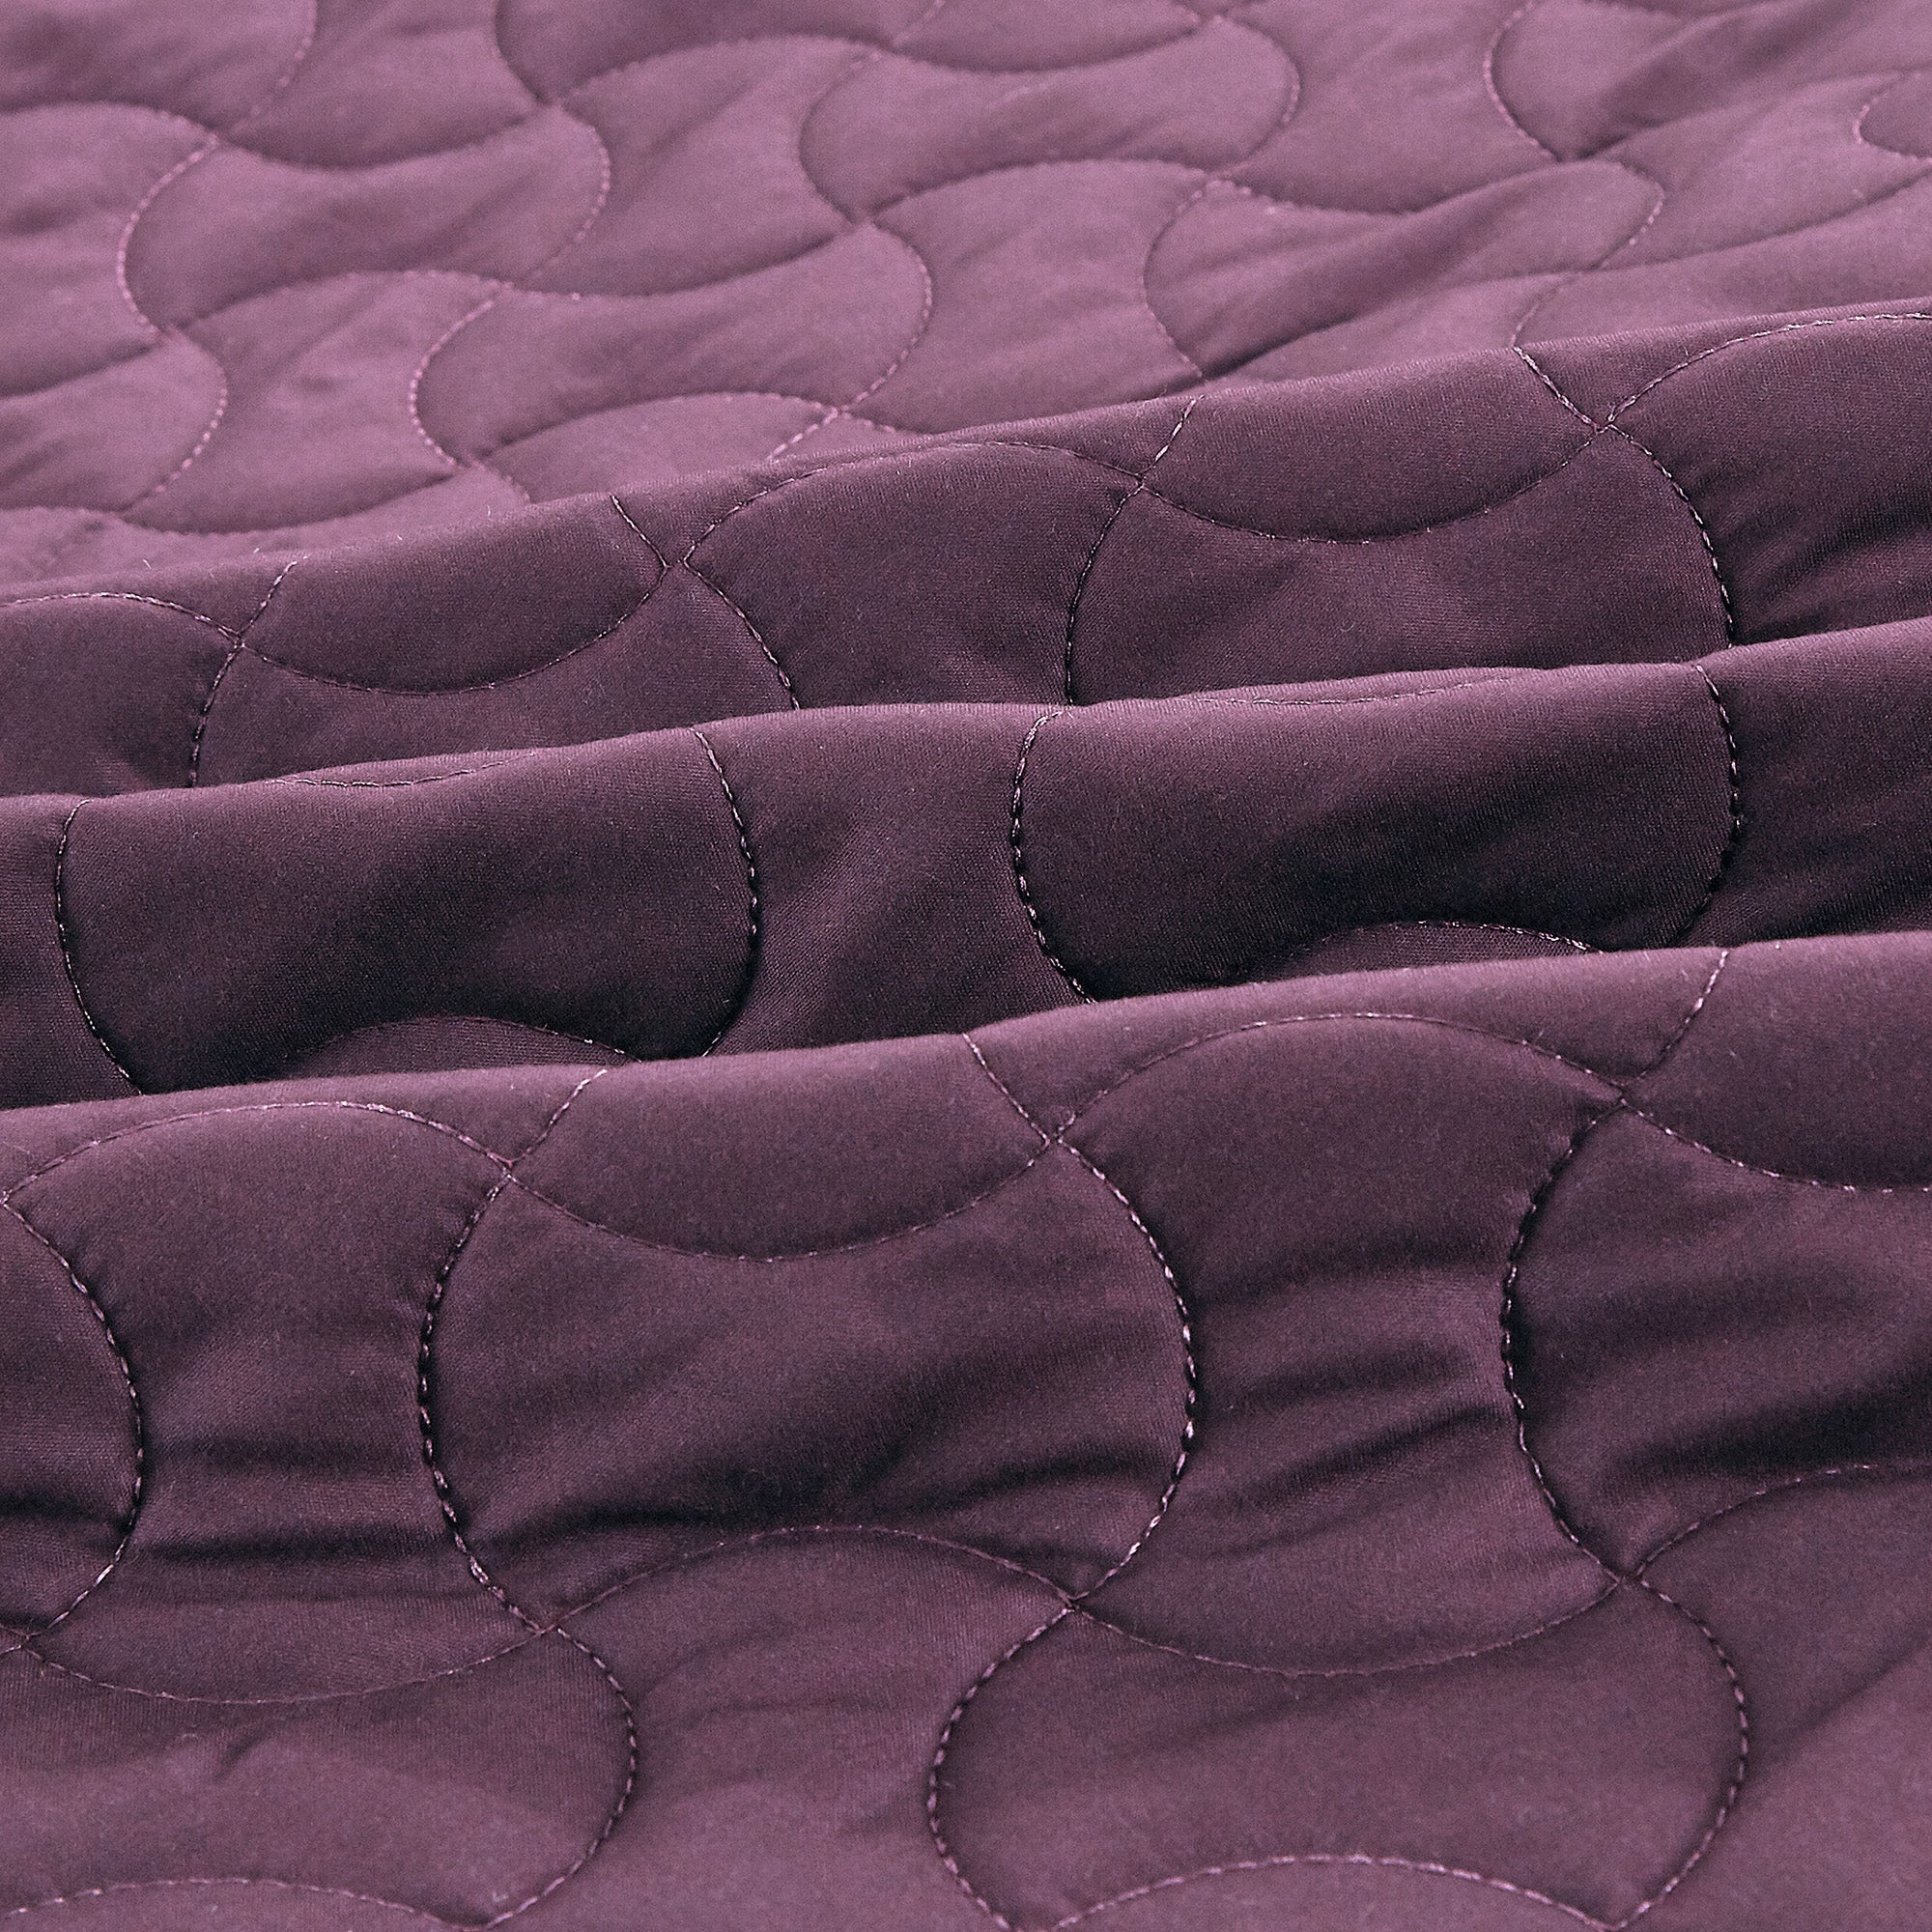 3 Piece Solid Quilt Set Lightweight Bedspread Set Zaka 2024